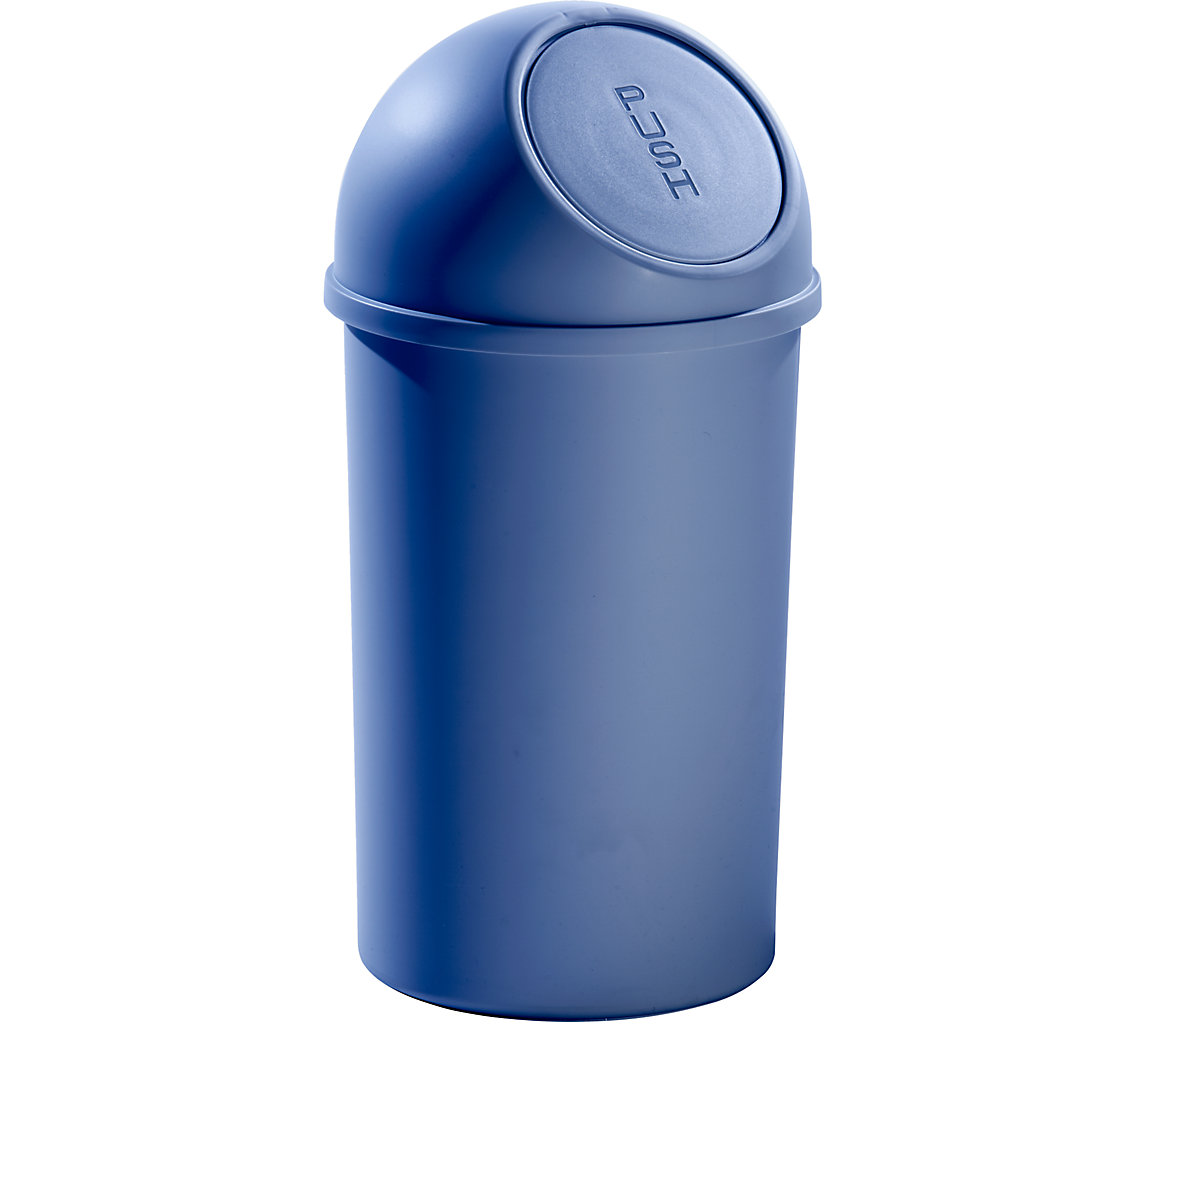 Push-afvalbak van kunststof – helit, inhoud 25 l, VE = 3 stuks, h x Ø = 615 x 315 mm, blauw-5